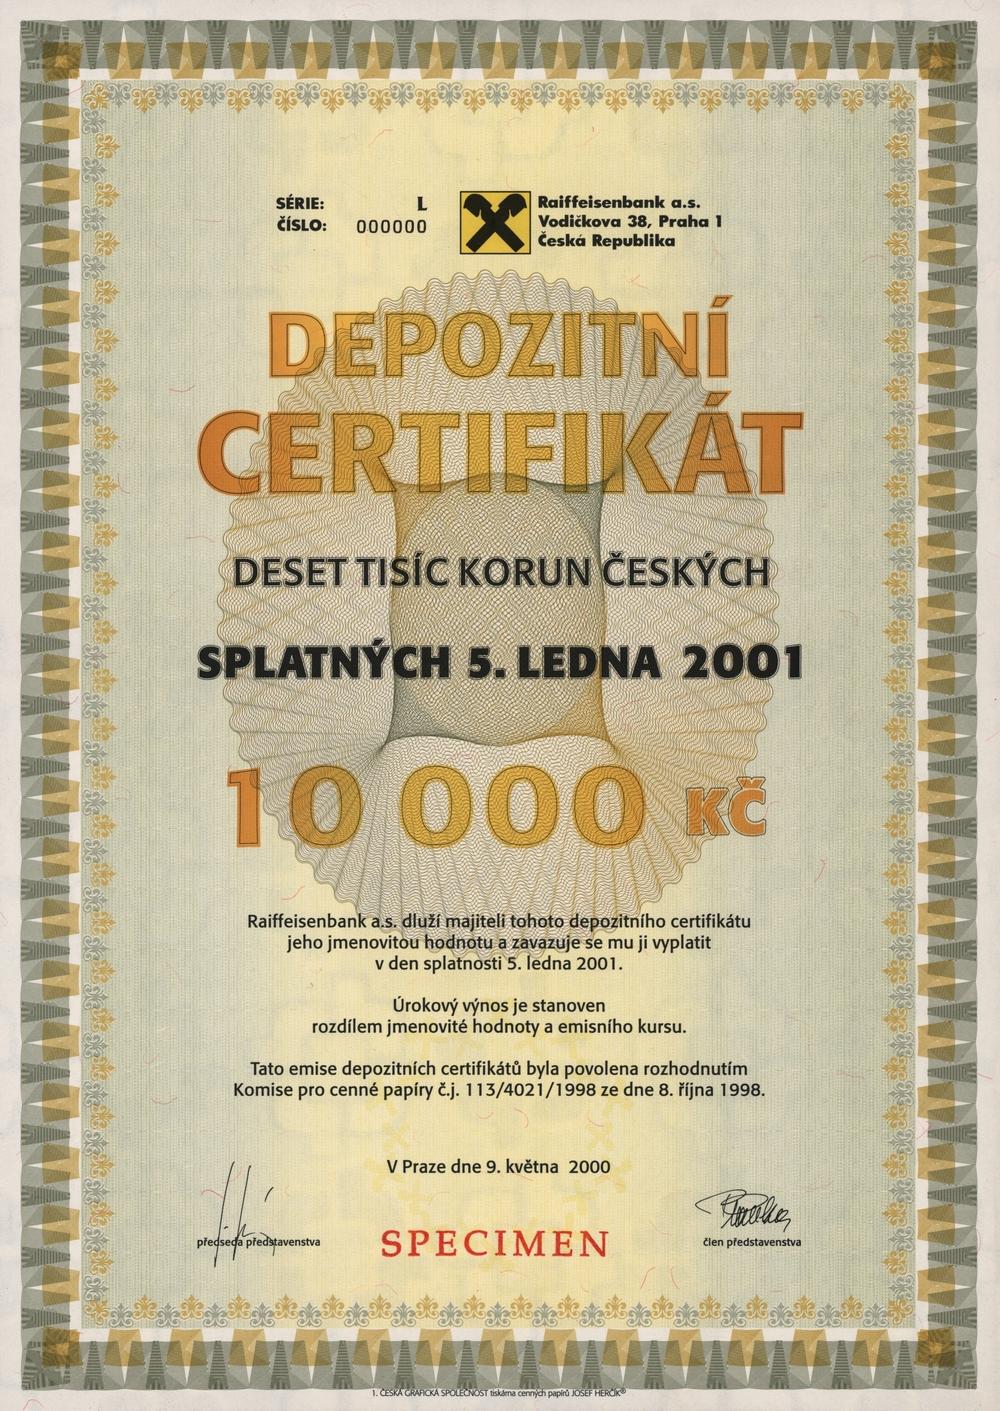 Raiffeisenbank a.s., Depozitní certifikát na 10000 Kč, Praha 2000